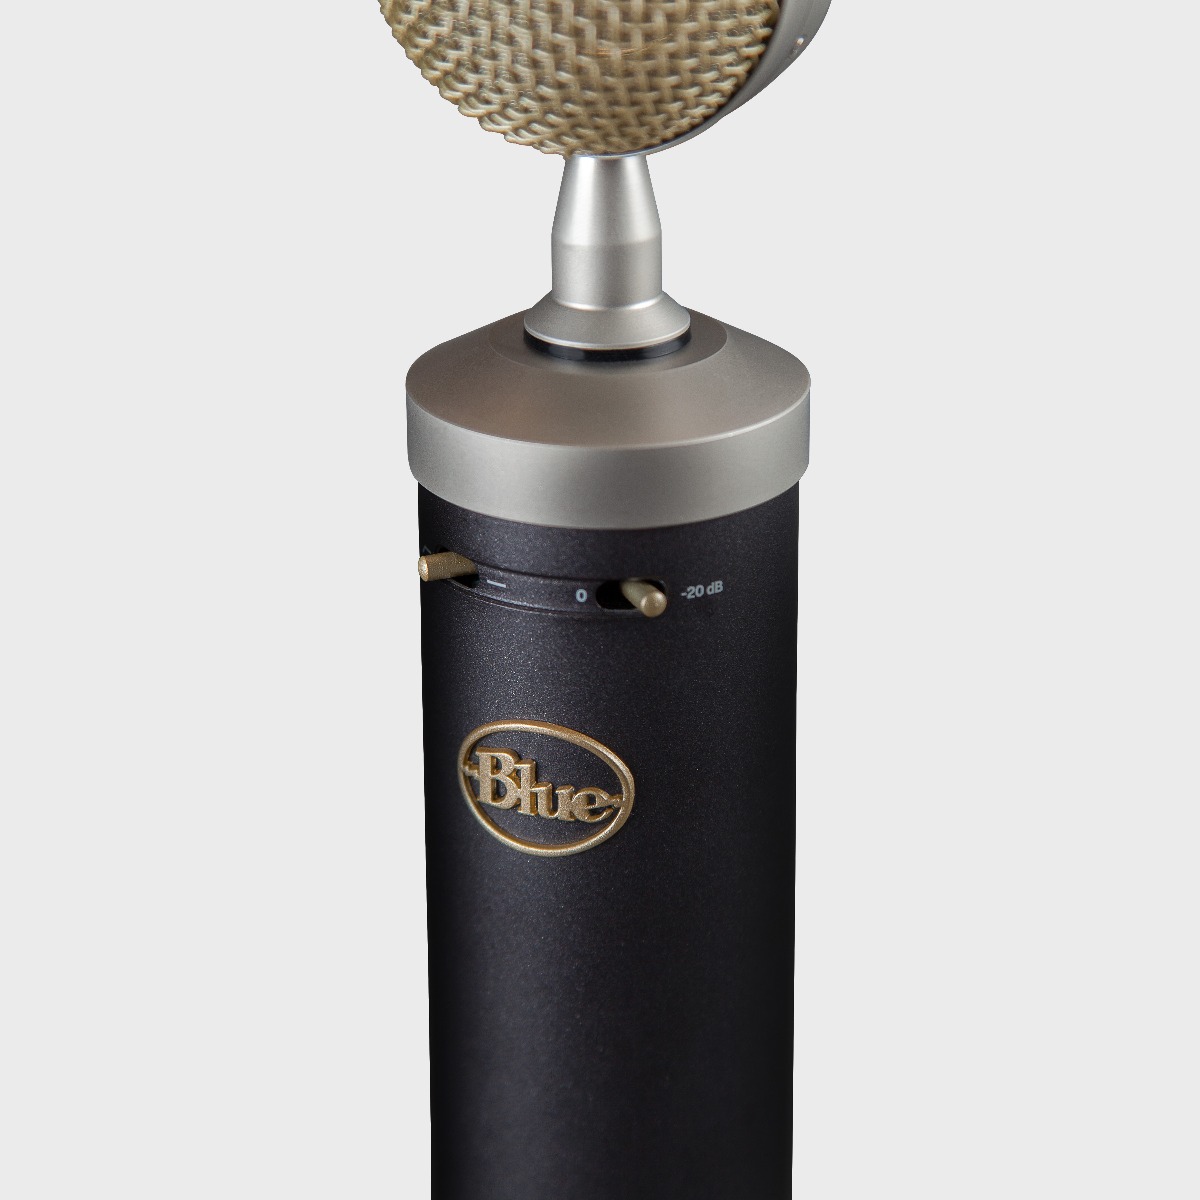 Blue Baby Bottle SL - Studio Condenser Microphone